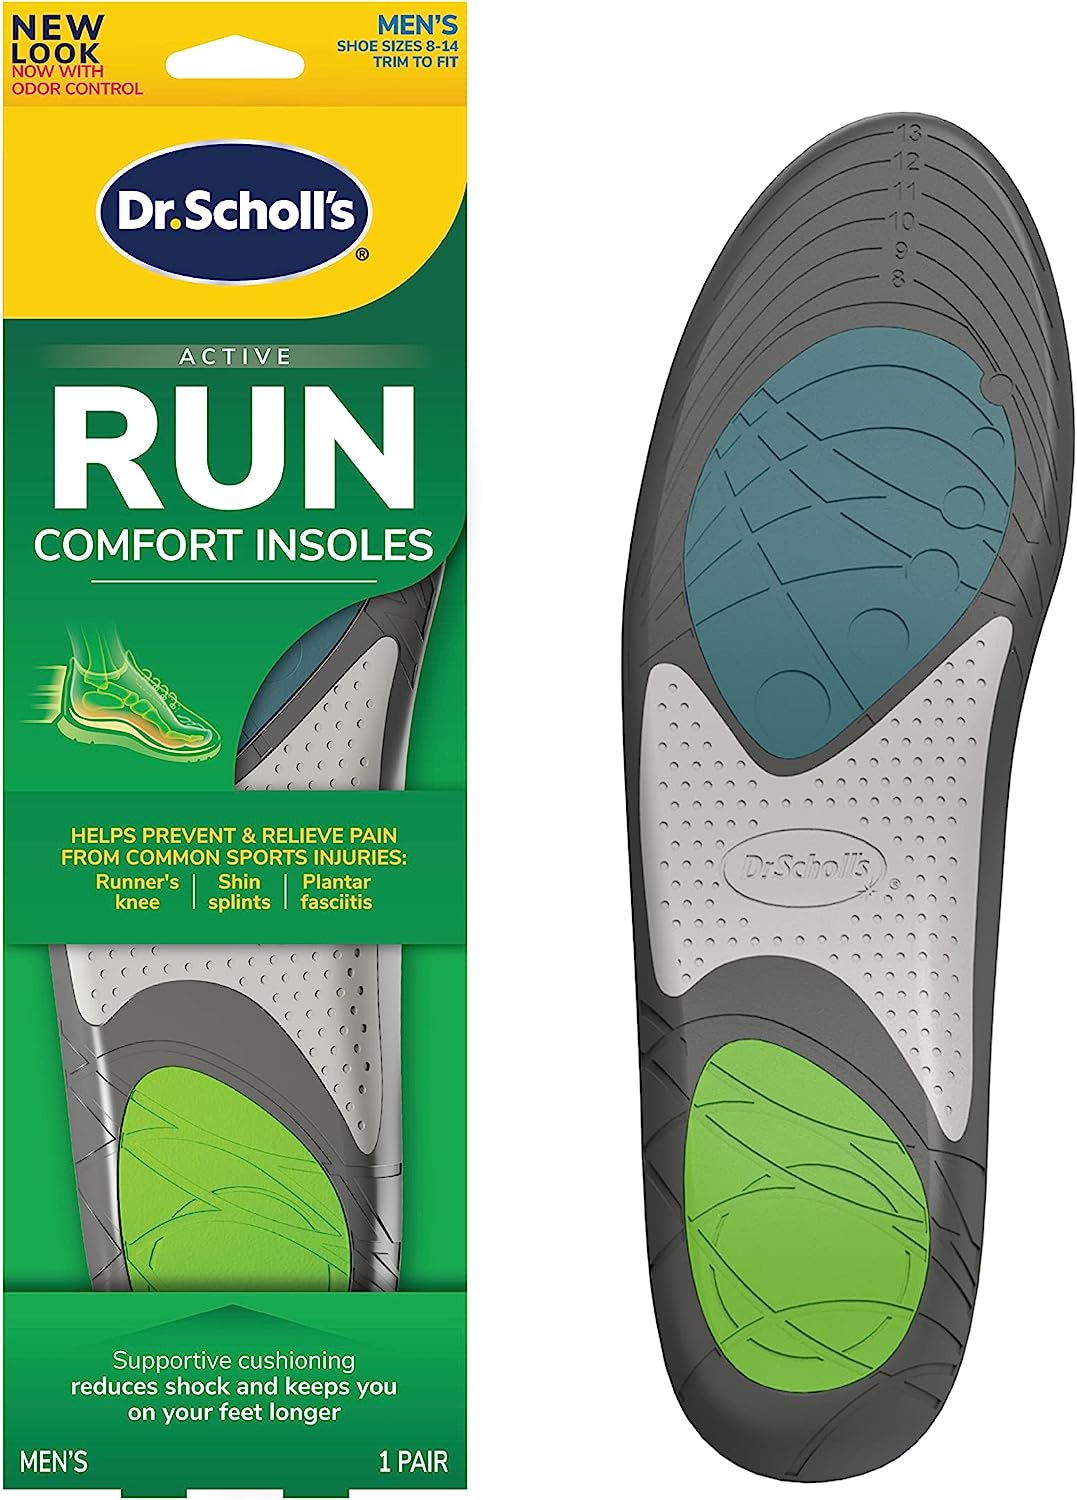 Dr. Scholl's Run Active Comfort Insoles,Men's, 1 Pair, [...]